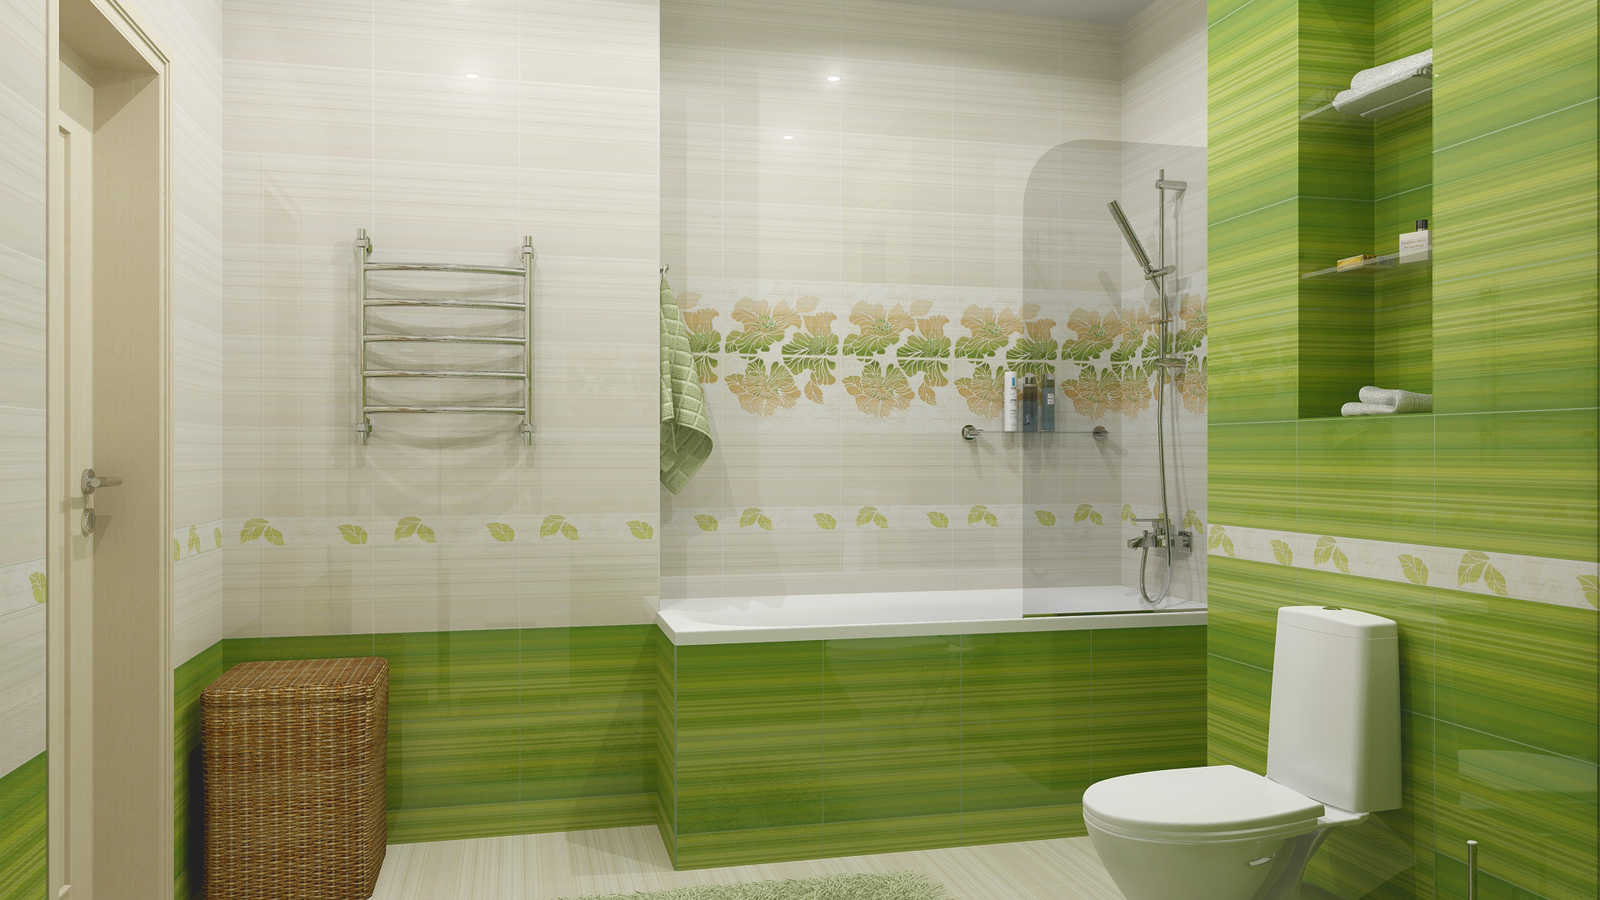 Как выглядит зеленая плитка в интерьере ванной комнаты